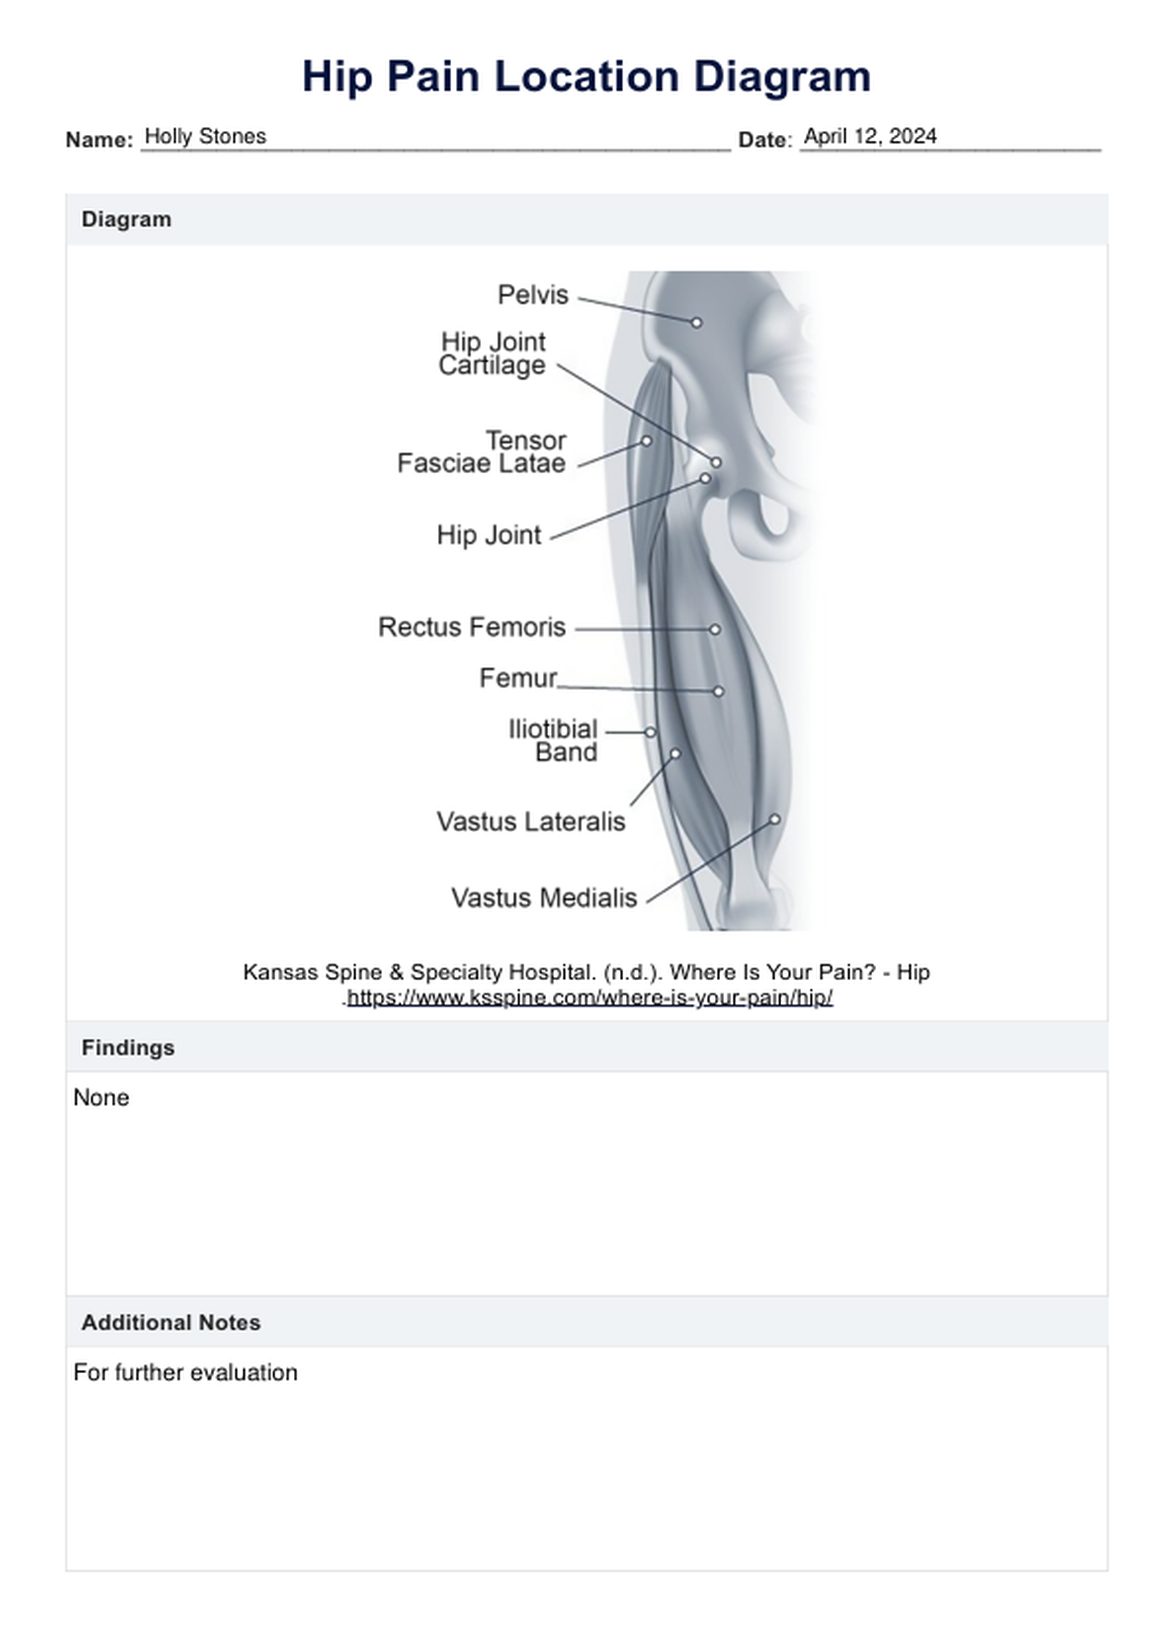 Hip Pain Location Diagram PDF Example